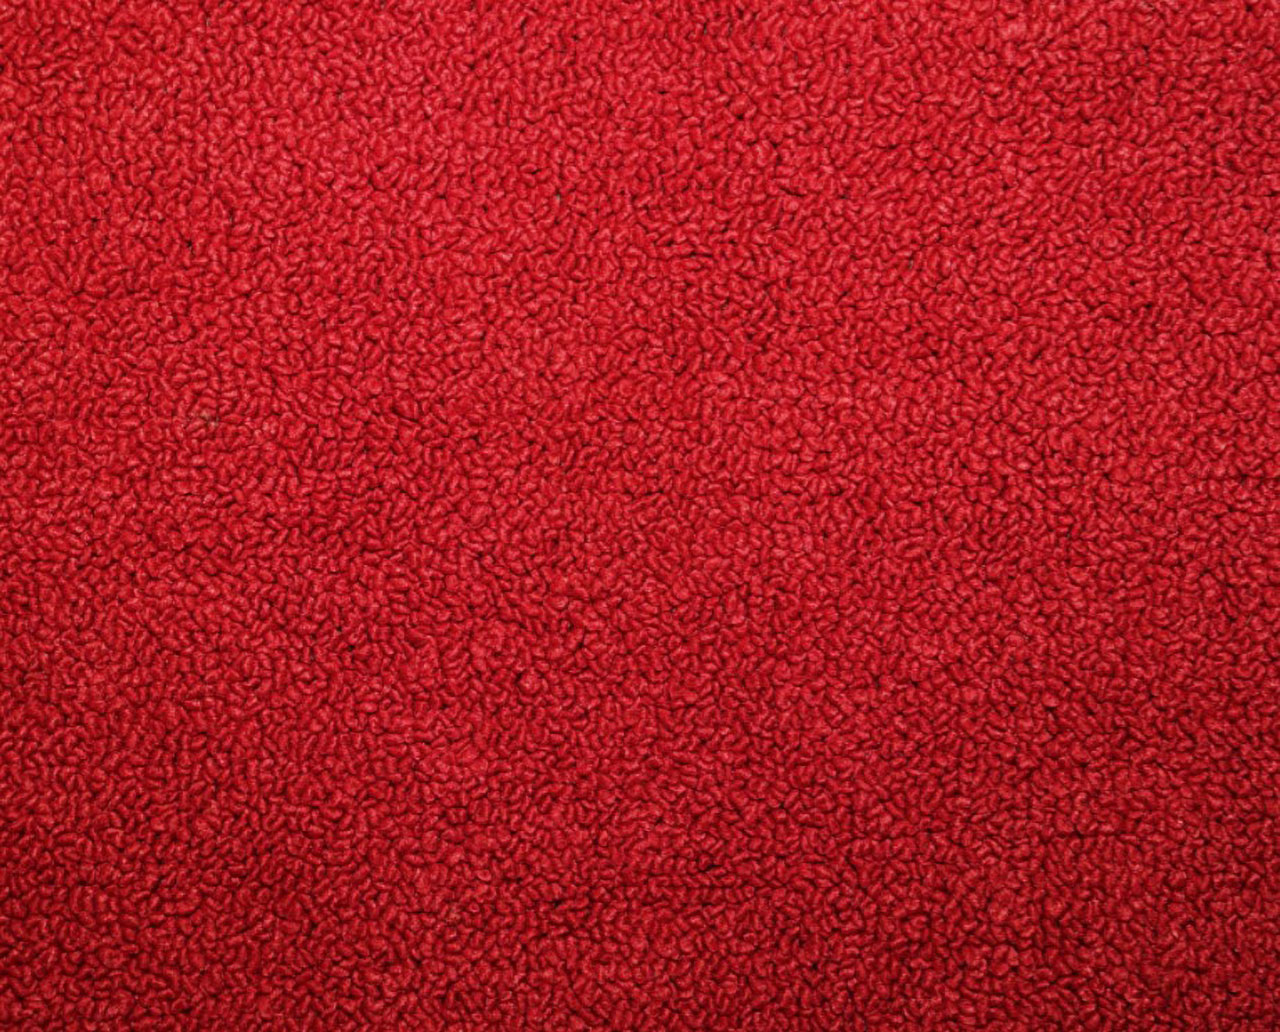 Holden Standard HD Standard Sedan E20 Mephisto Red Carpet (Image 1 of 1)